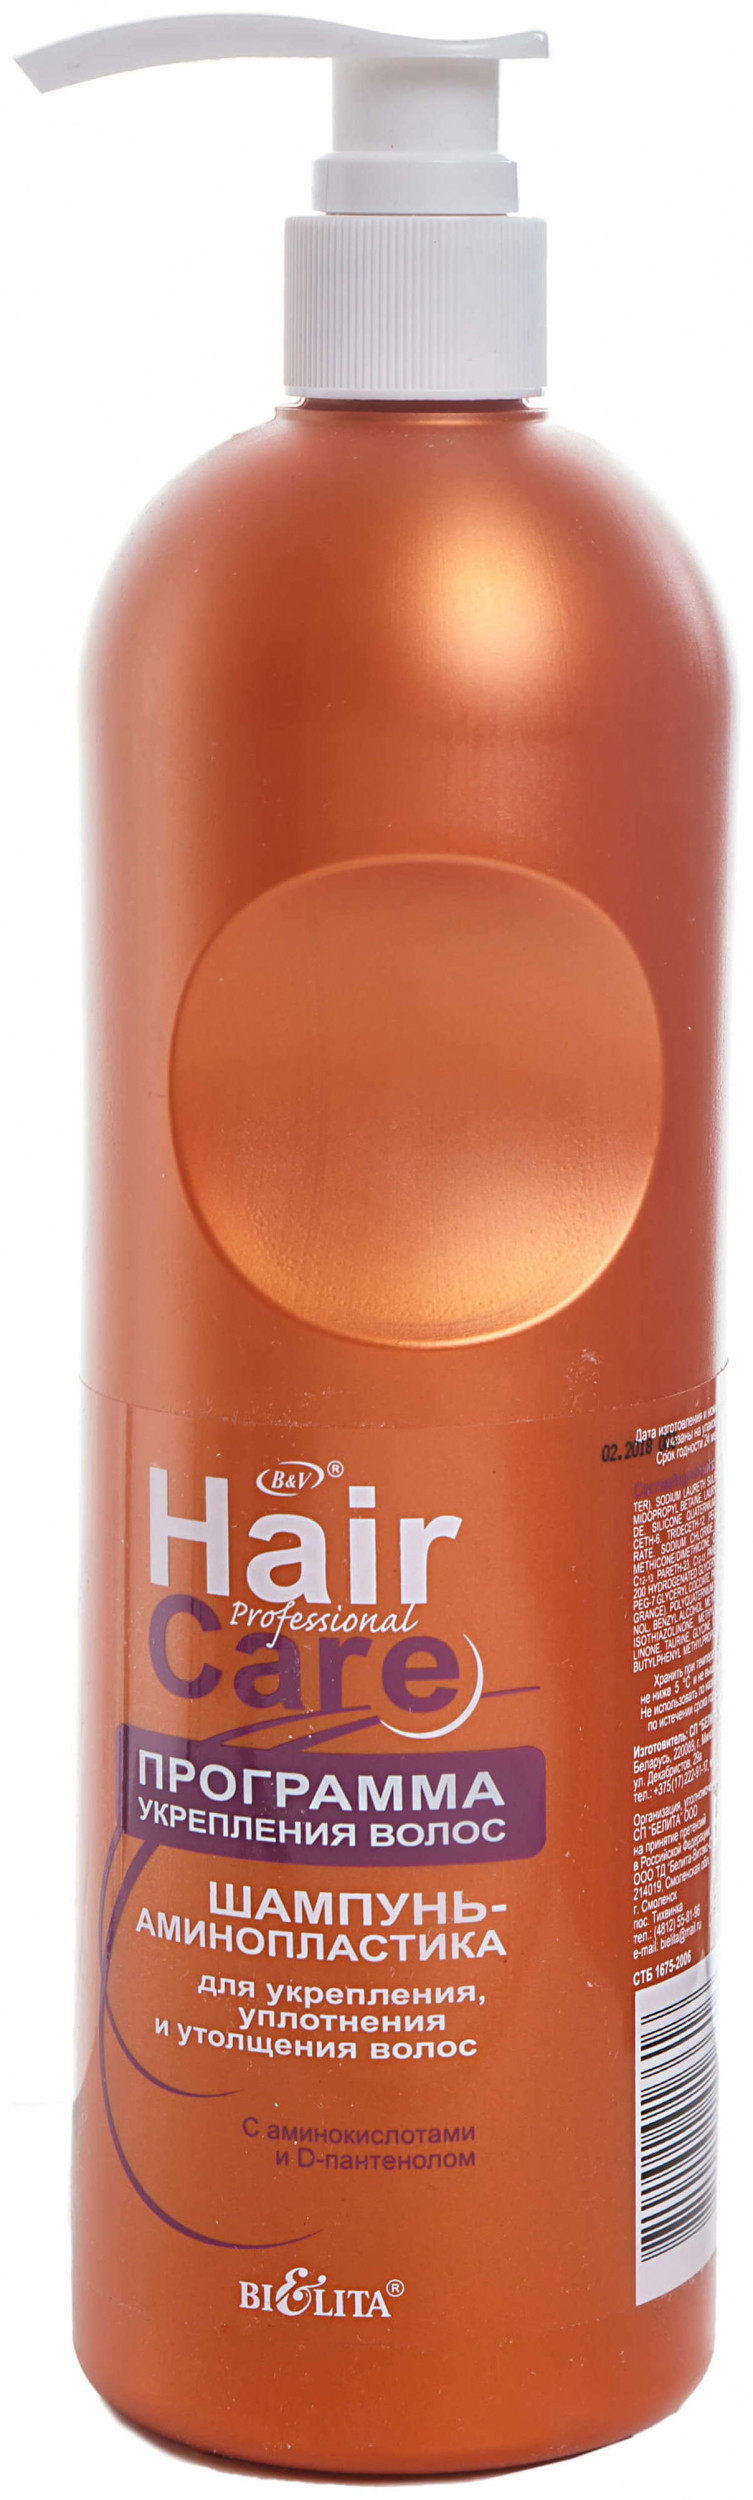 Шампунь-аминопластика для укрепления, уплотнения и утолщения волос Белита - Витекс Professional Hair Care